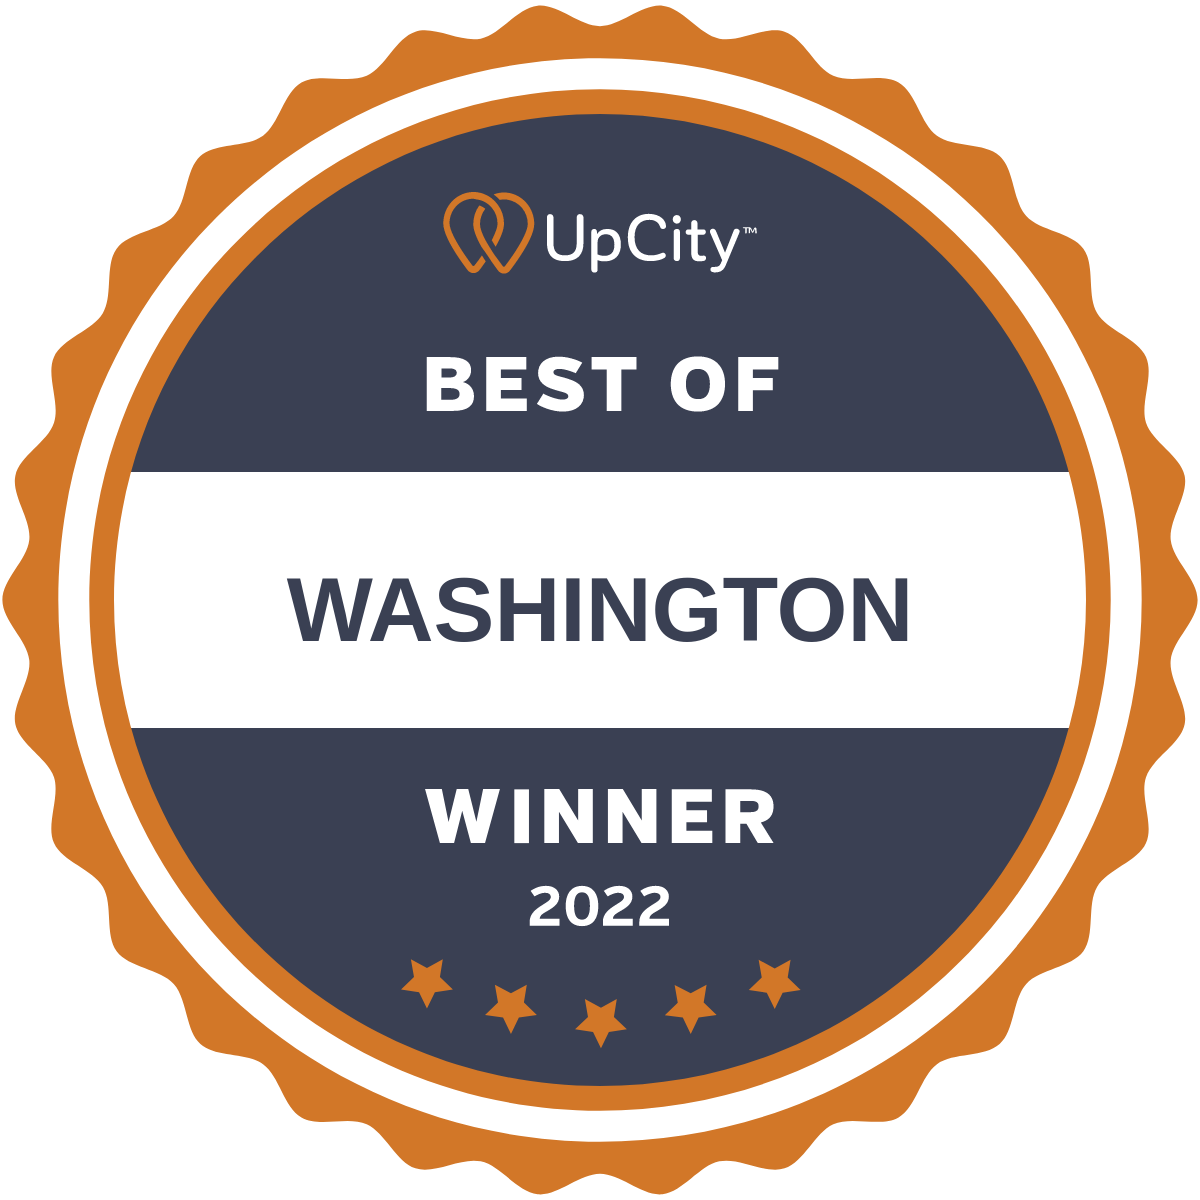 United States 营销公司 iMedPages, LLC 获得了 UpCity Award 奖项